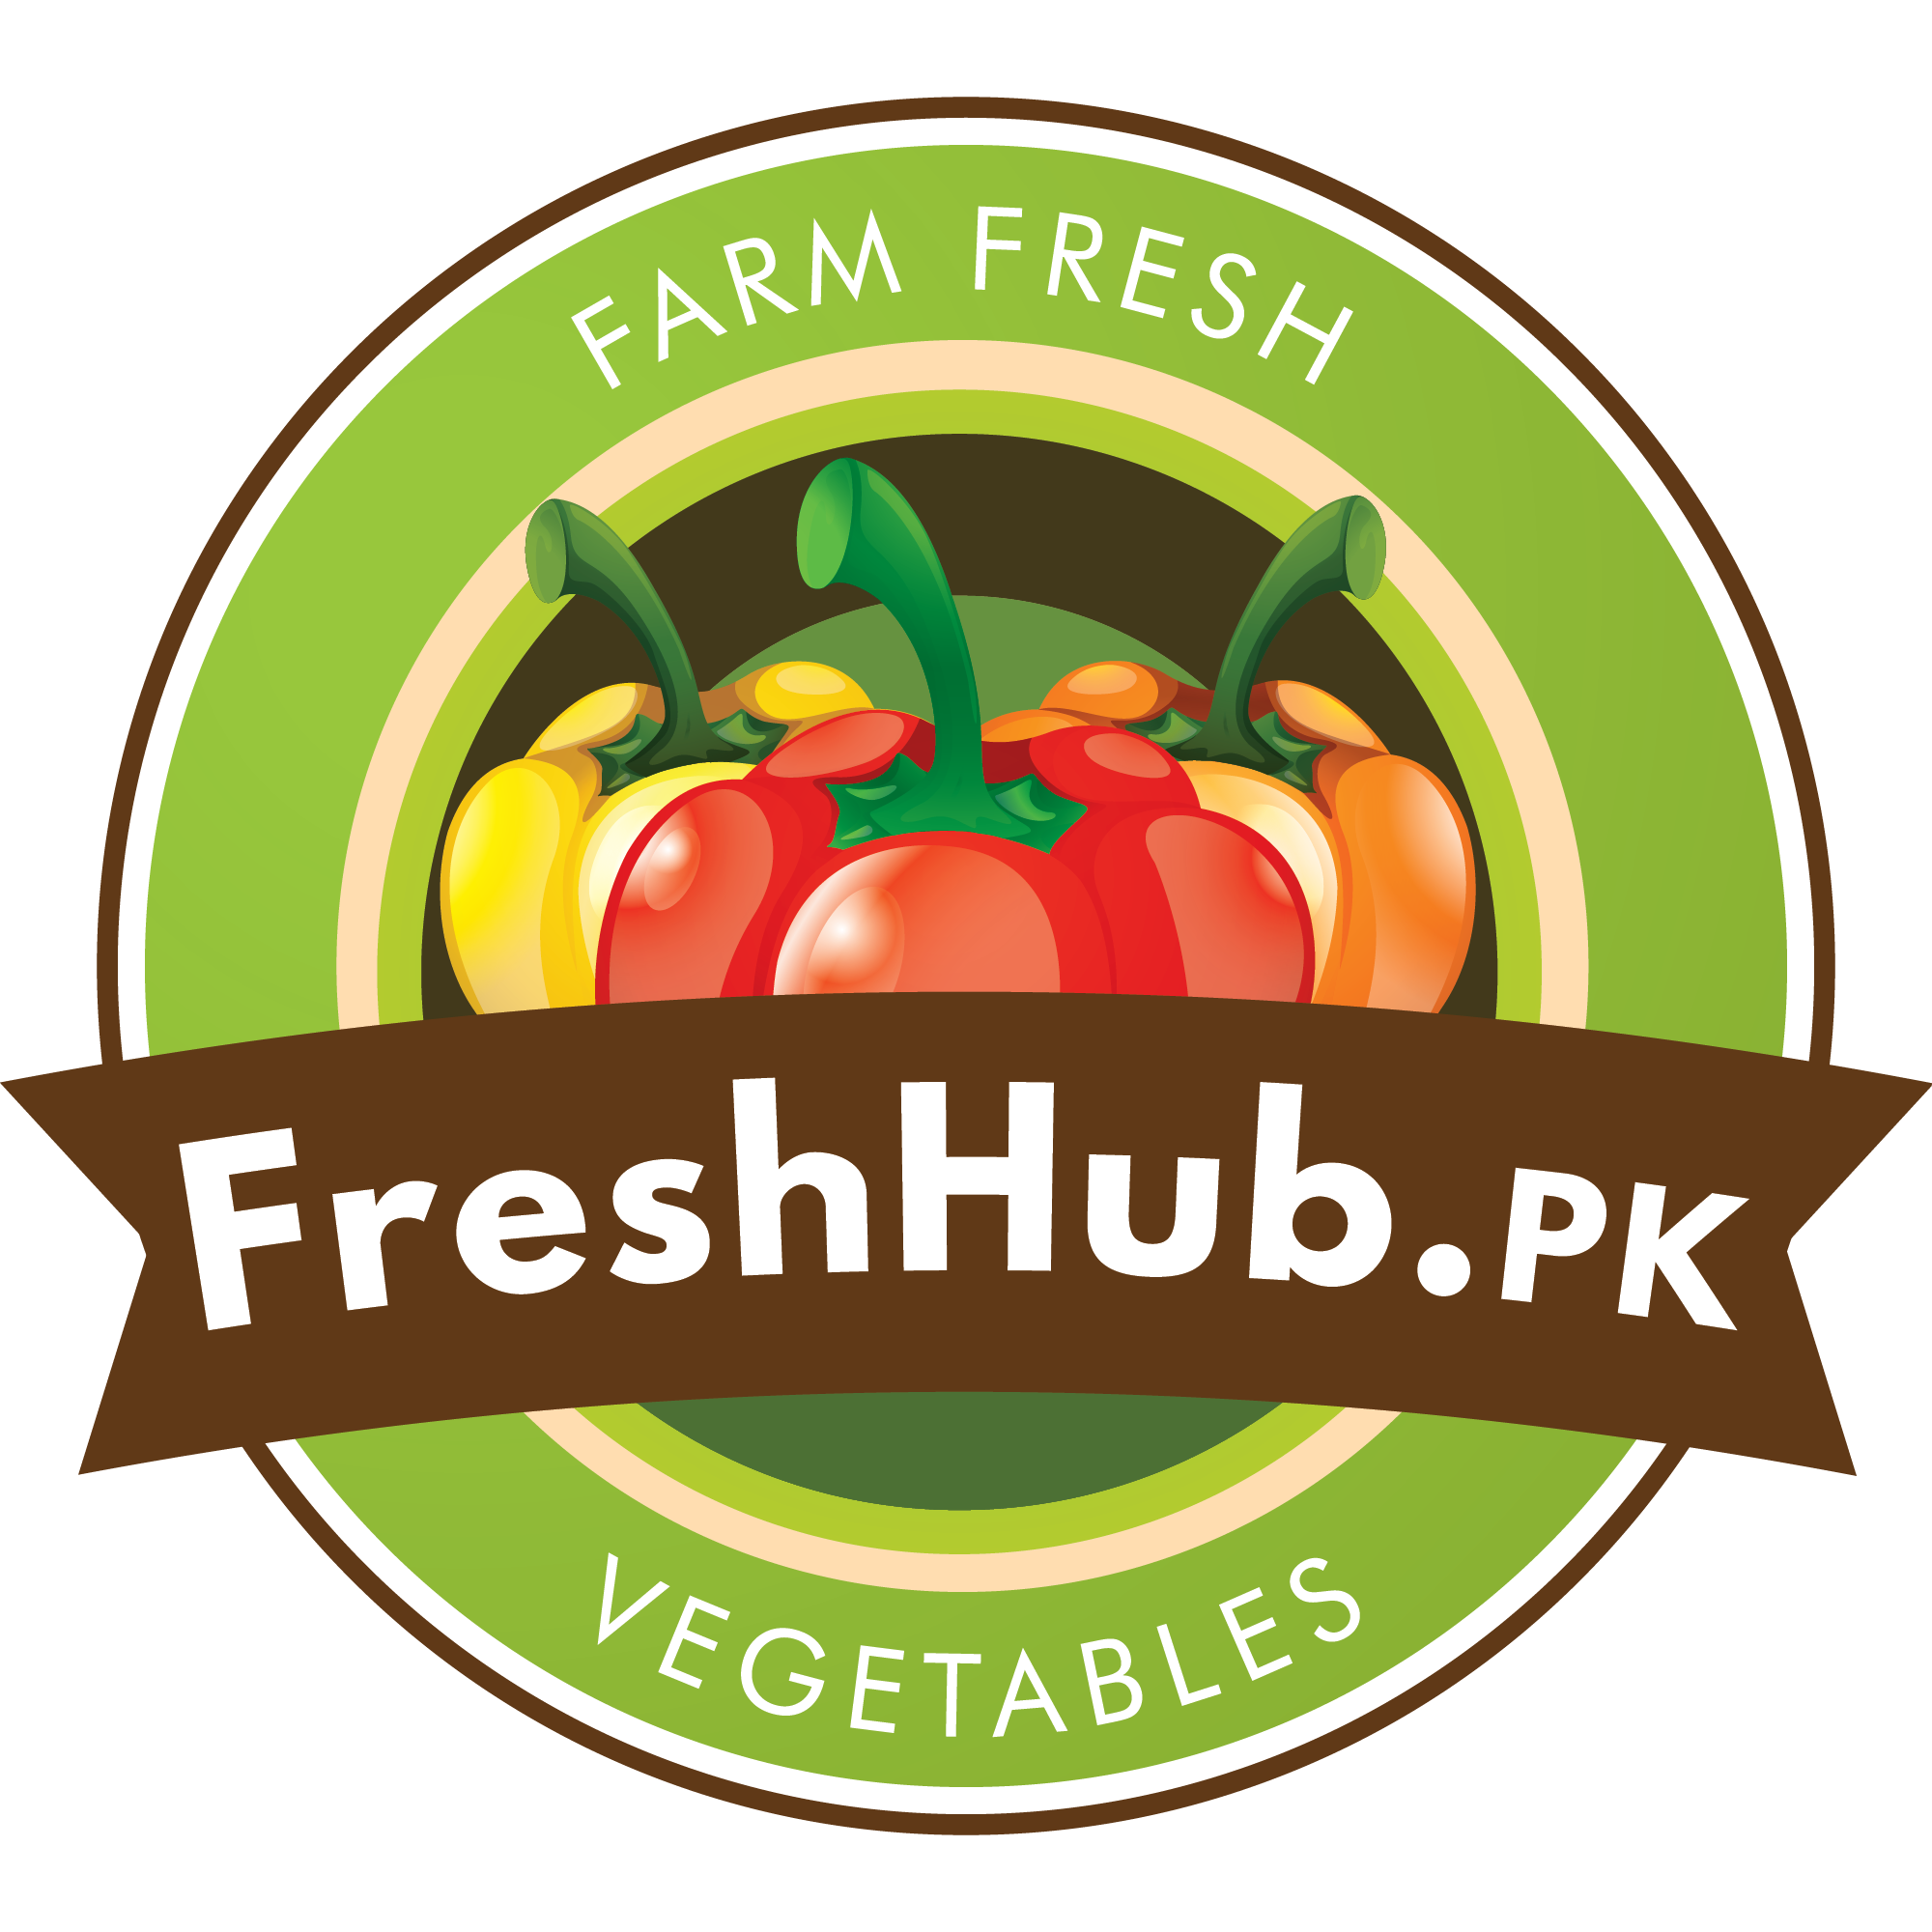 FreshHub.pk